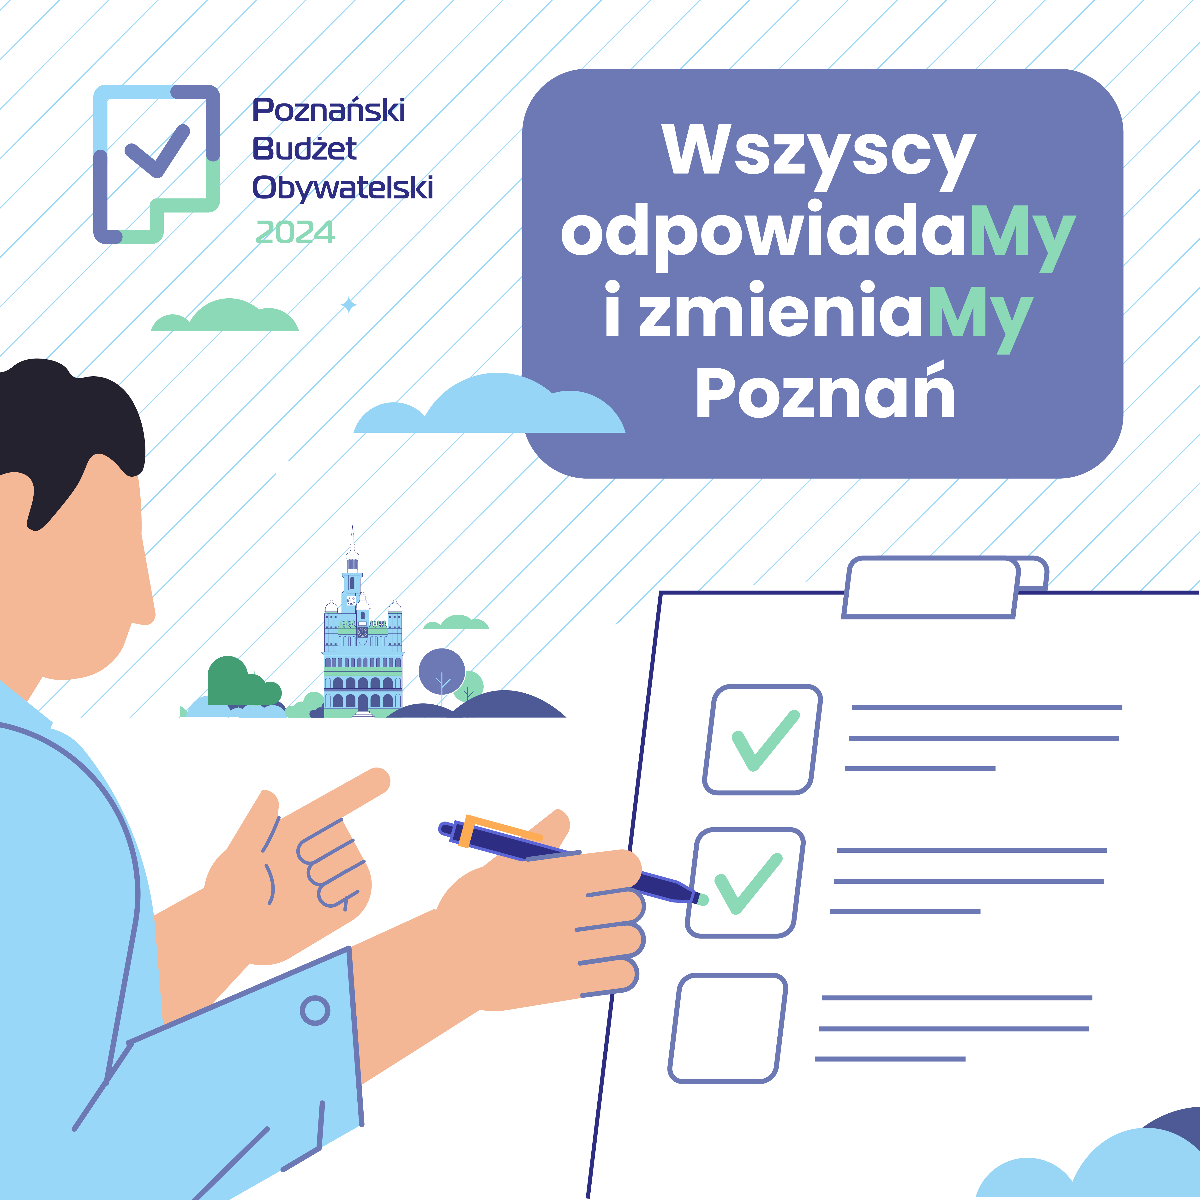 Grafika przedstawia rysunek człowieka, który zaznacza "ptaszki" na karcie do głosowania oraz logo Poznańskiego Budżetu Obywatelskiego. - grafika artykułu